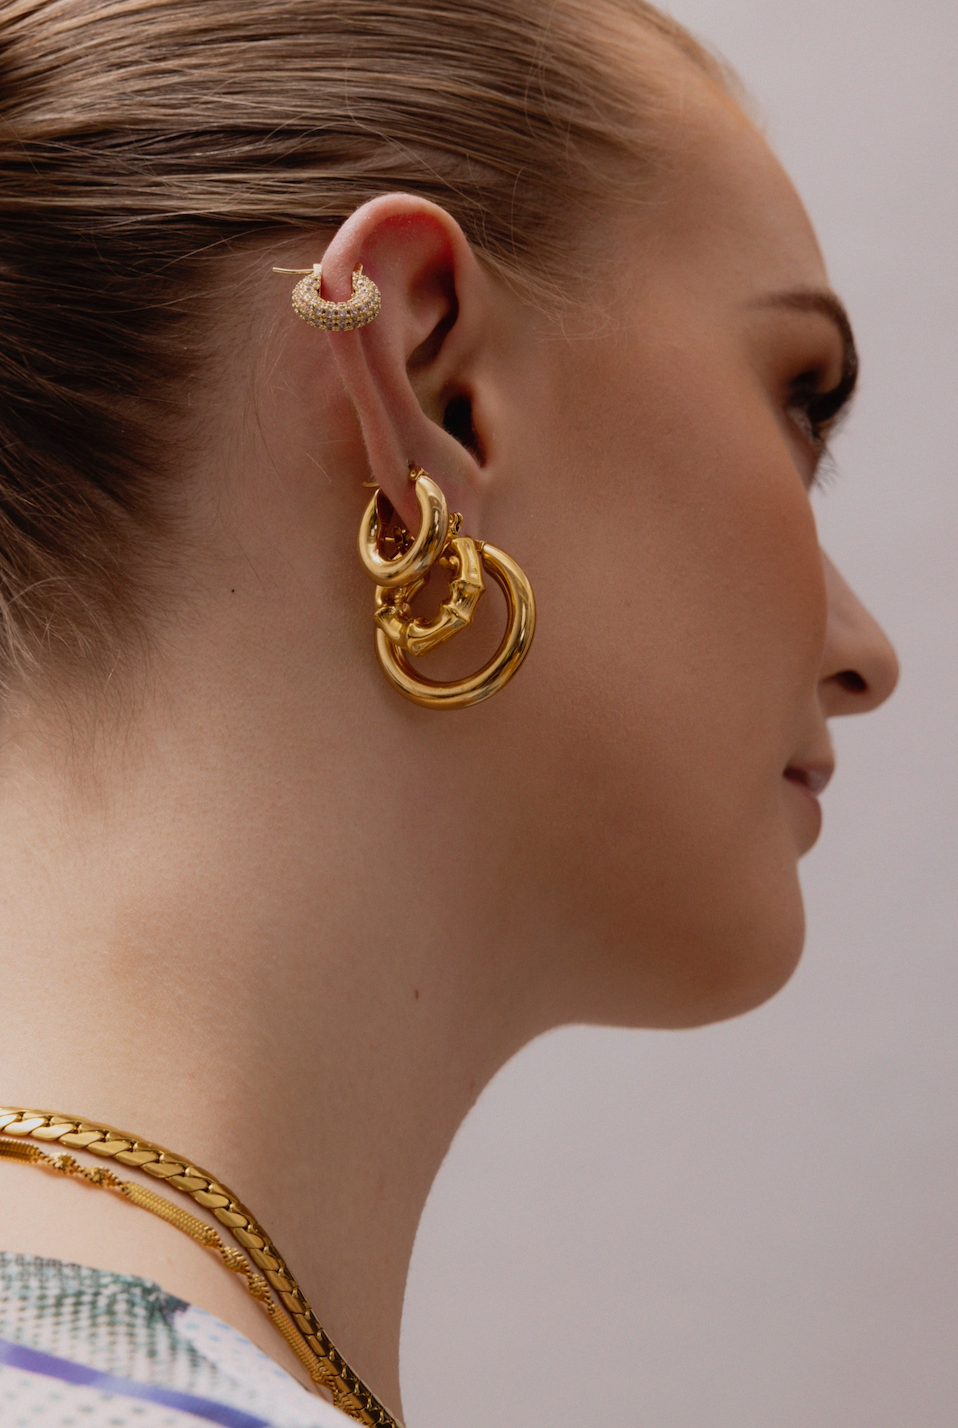 30mm 18k Gold Hoops Earrings